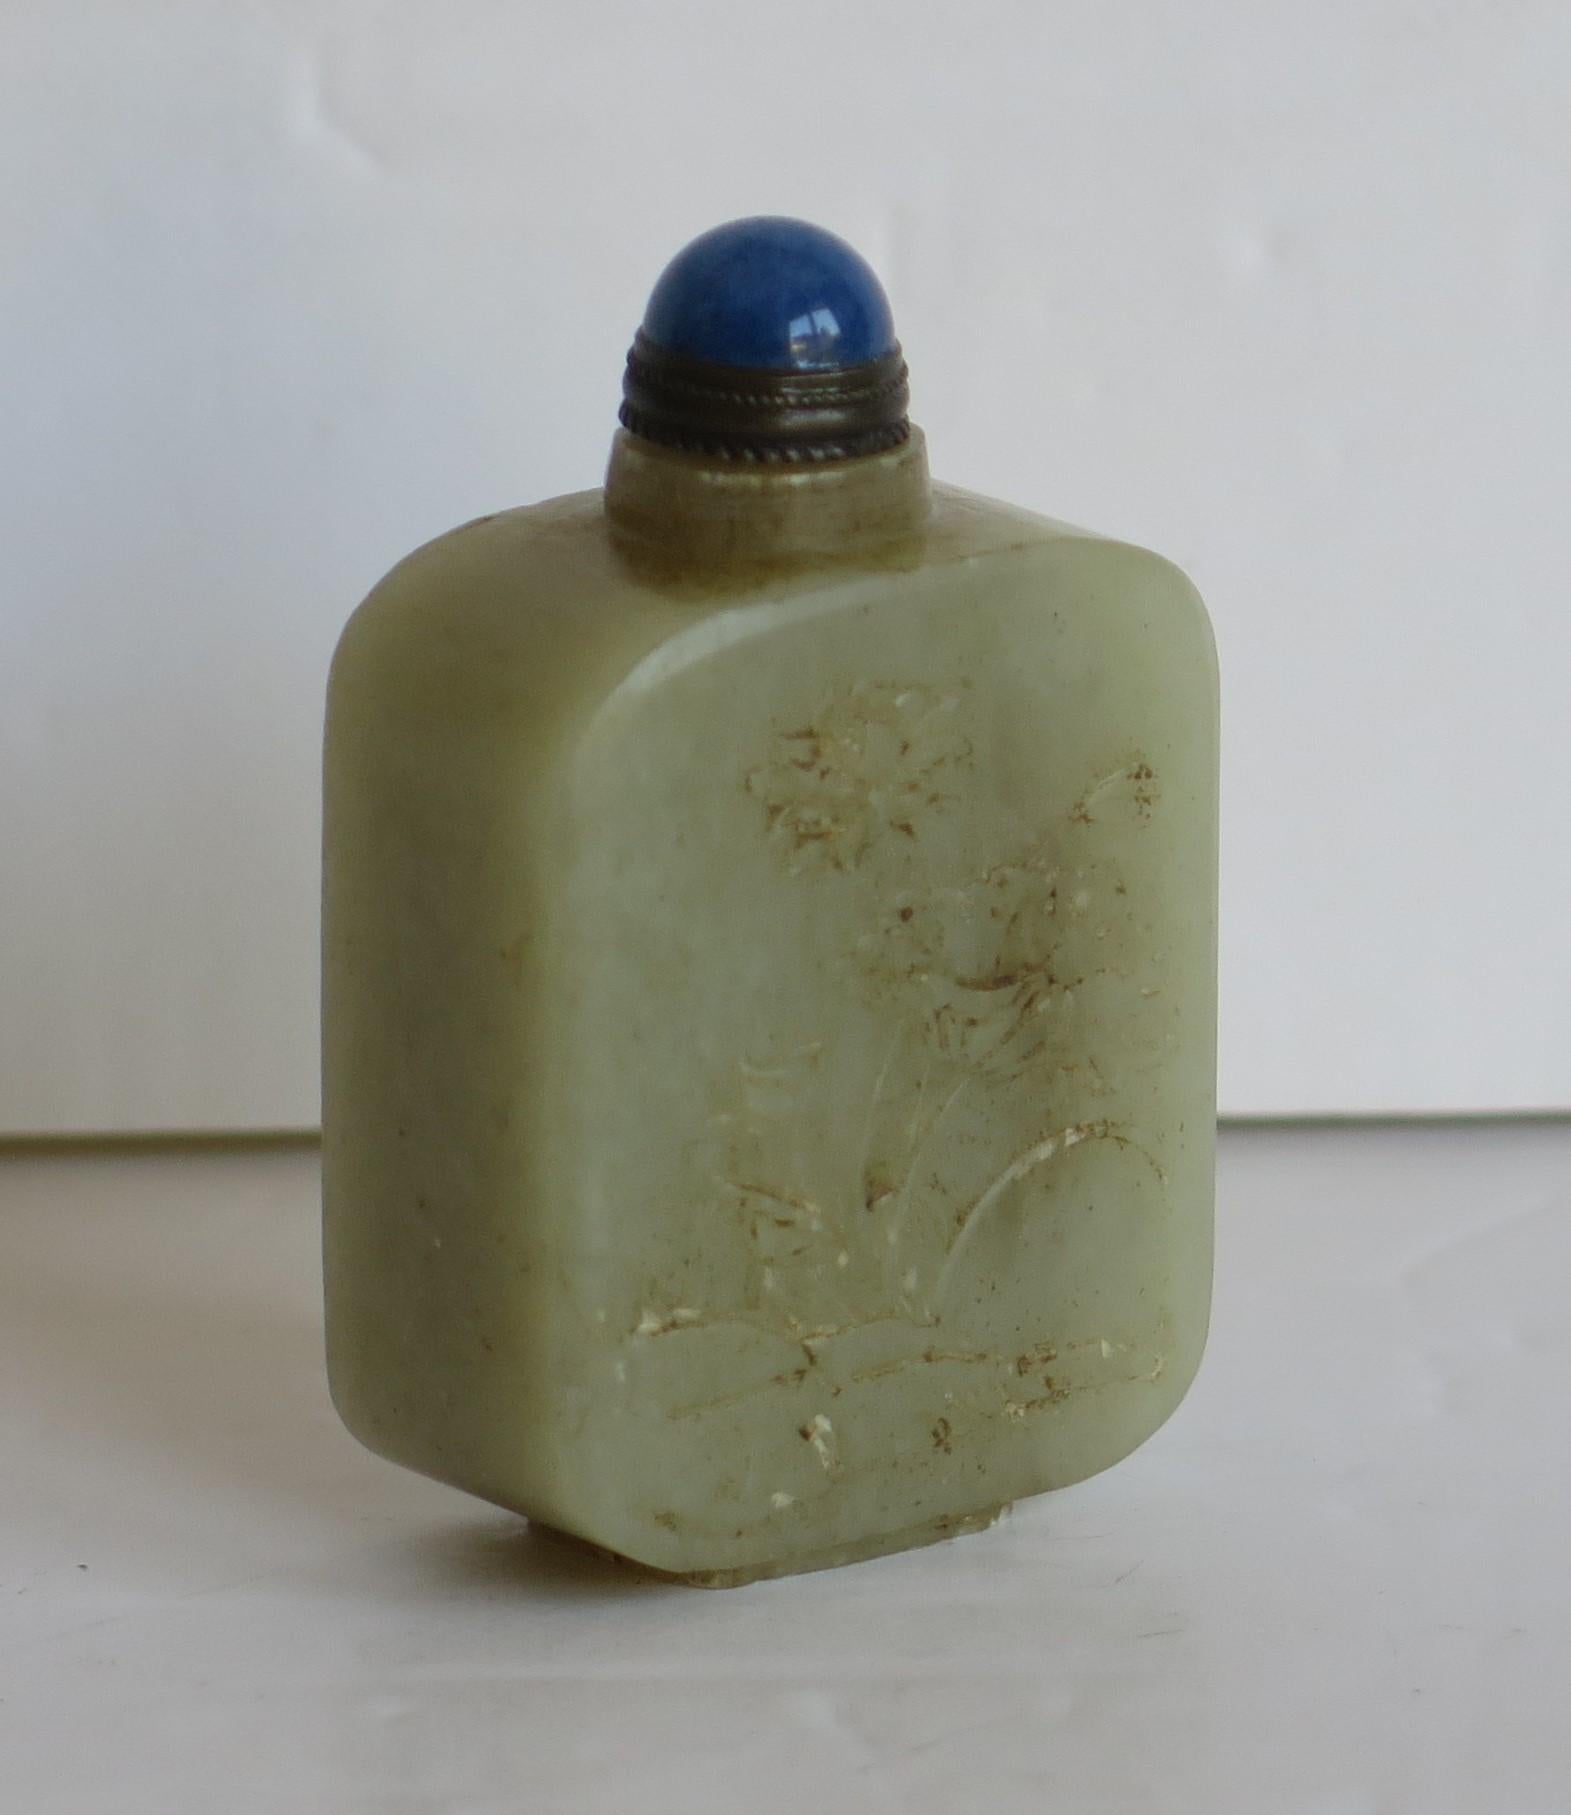 Dies ist eine schöne chinesische Schnupftabakflasche, gut geschnitzt und aus einem Stein mit einem hellen Celadon grüne Farbe, die wir als Nephrit Attribut.

Die Flasche hat eine schöne hellgrüne Seladonfarbe und steht auf einem niedrigen Fuß. Es